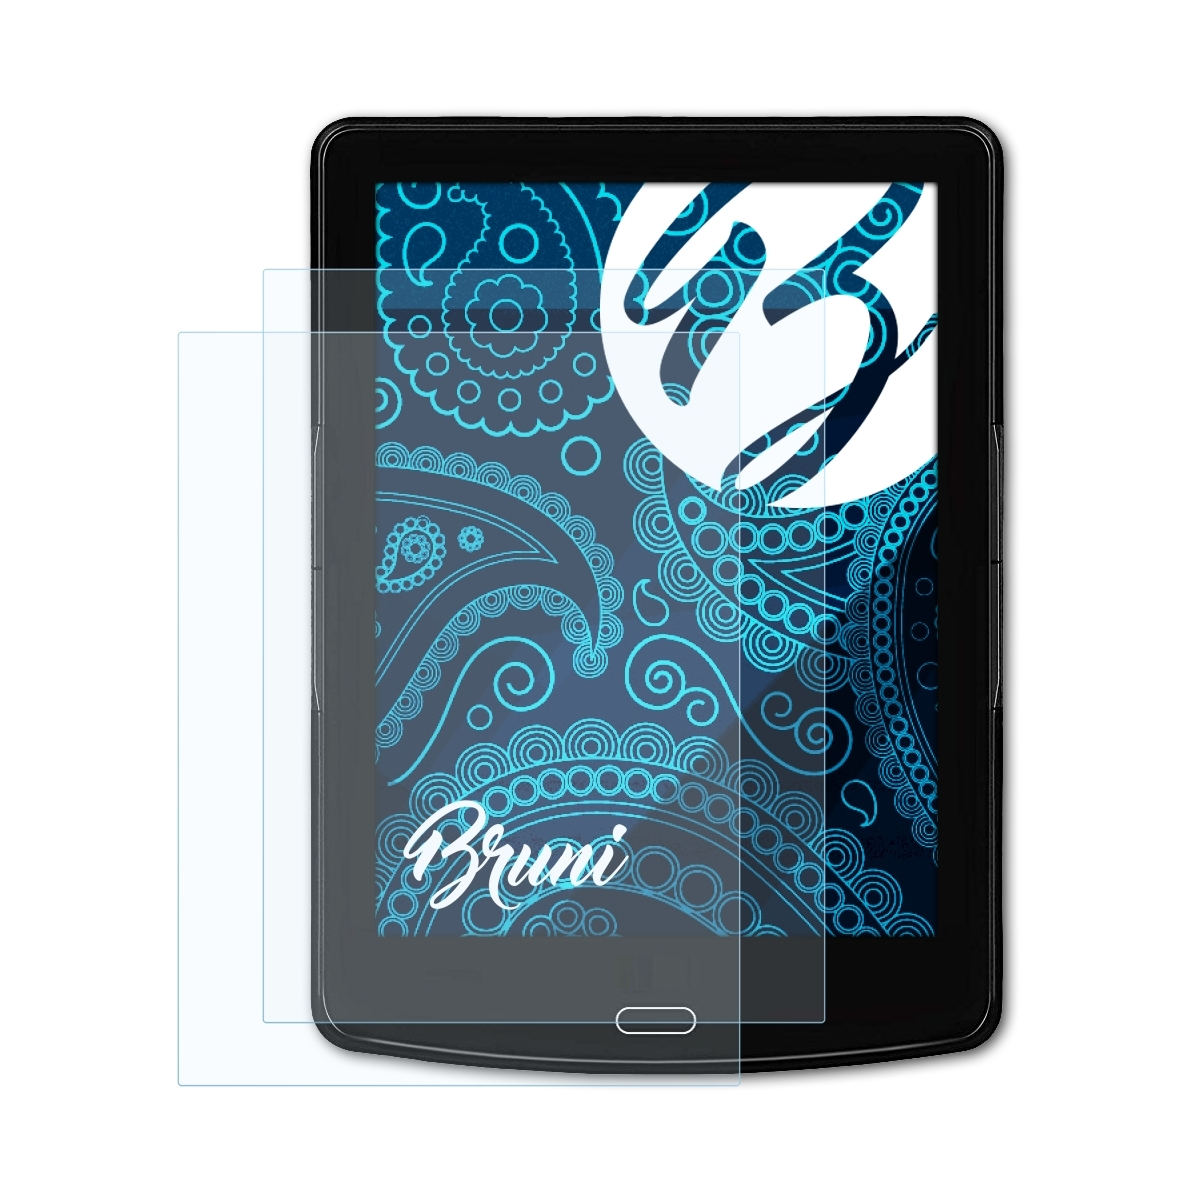 BRUNI Basics-Clear Schutzfolie(für inkBook 2x Prime HD)